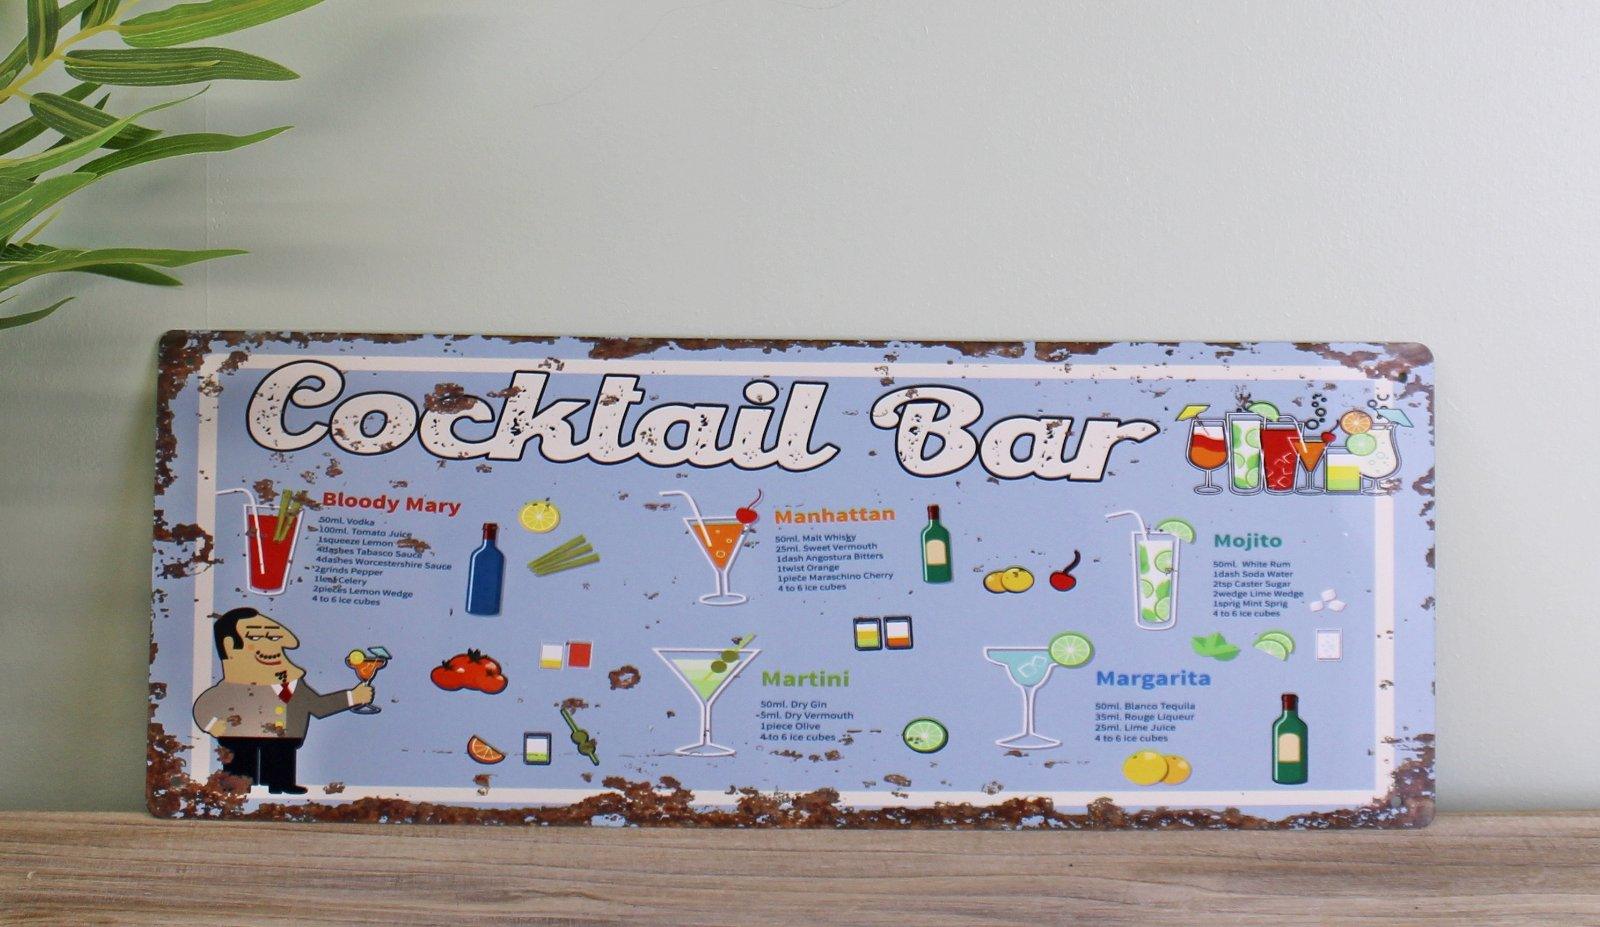 Vintage Metal Sign - Cocktail Bar - £21.99 - Metal Sign 